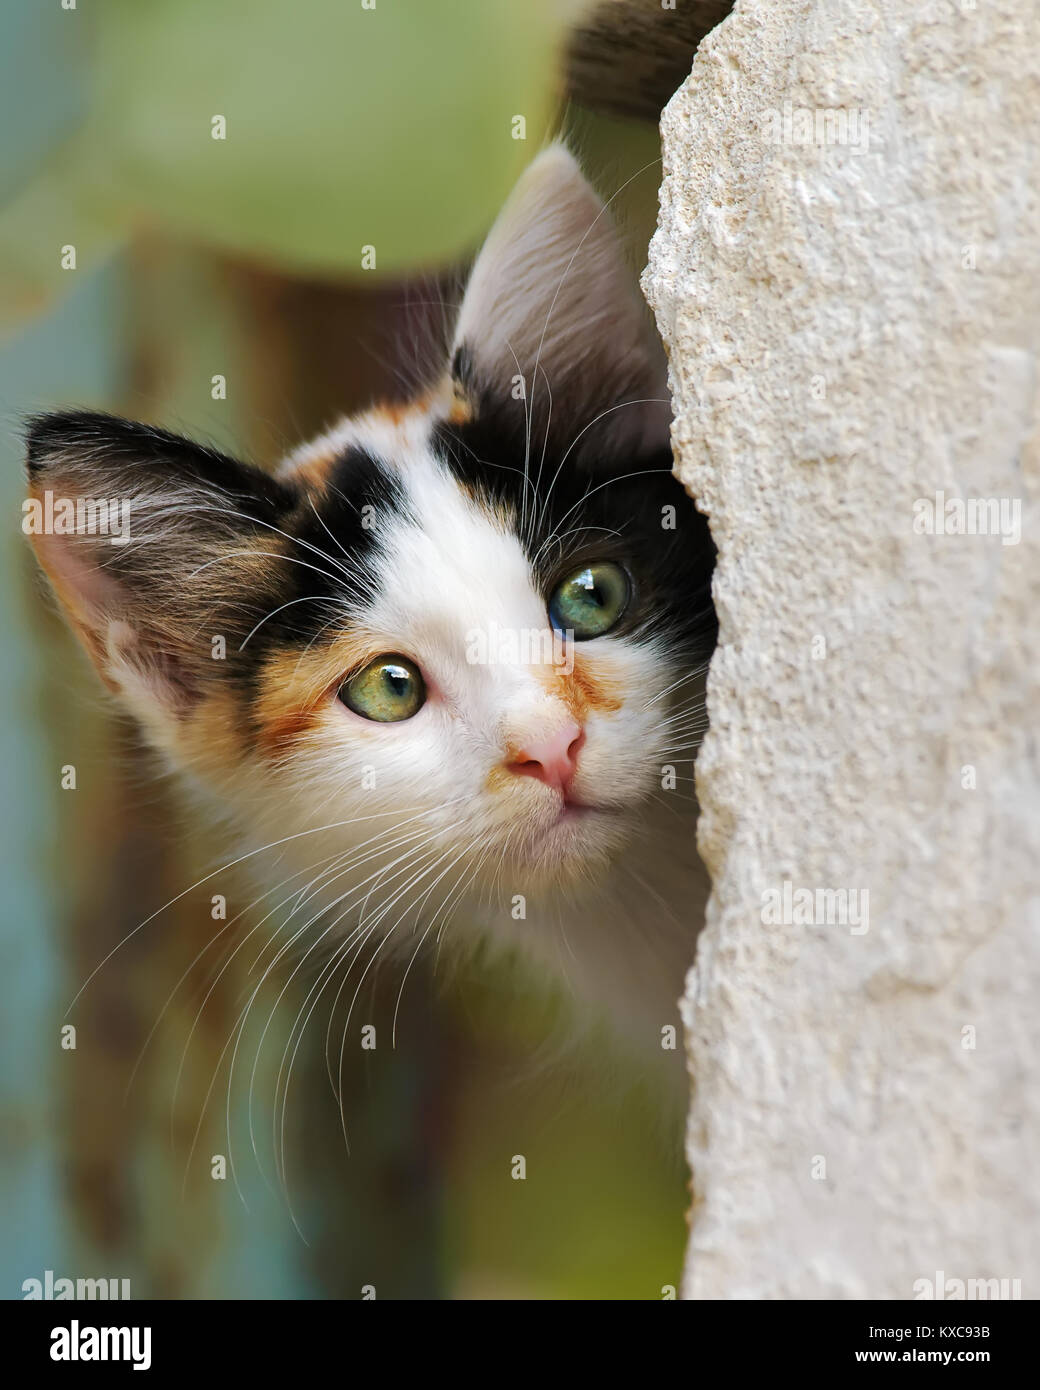 Carino tricolore calico patched tabby kitten il peering da dietro una parete con occhi indiscreti, close-up cat ritratto, Cipro Foto Stock